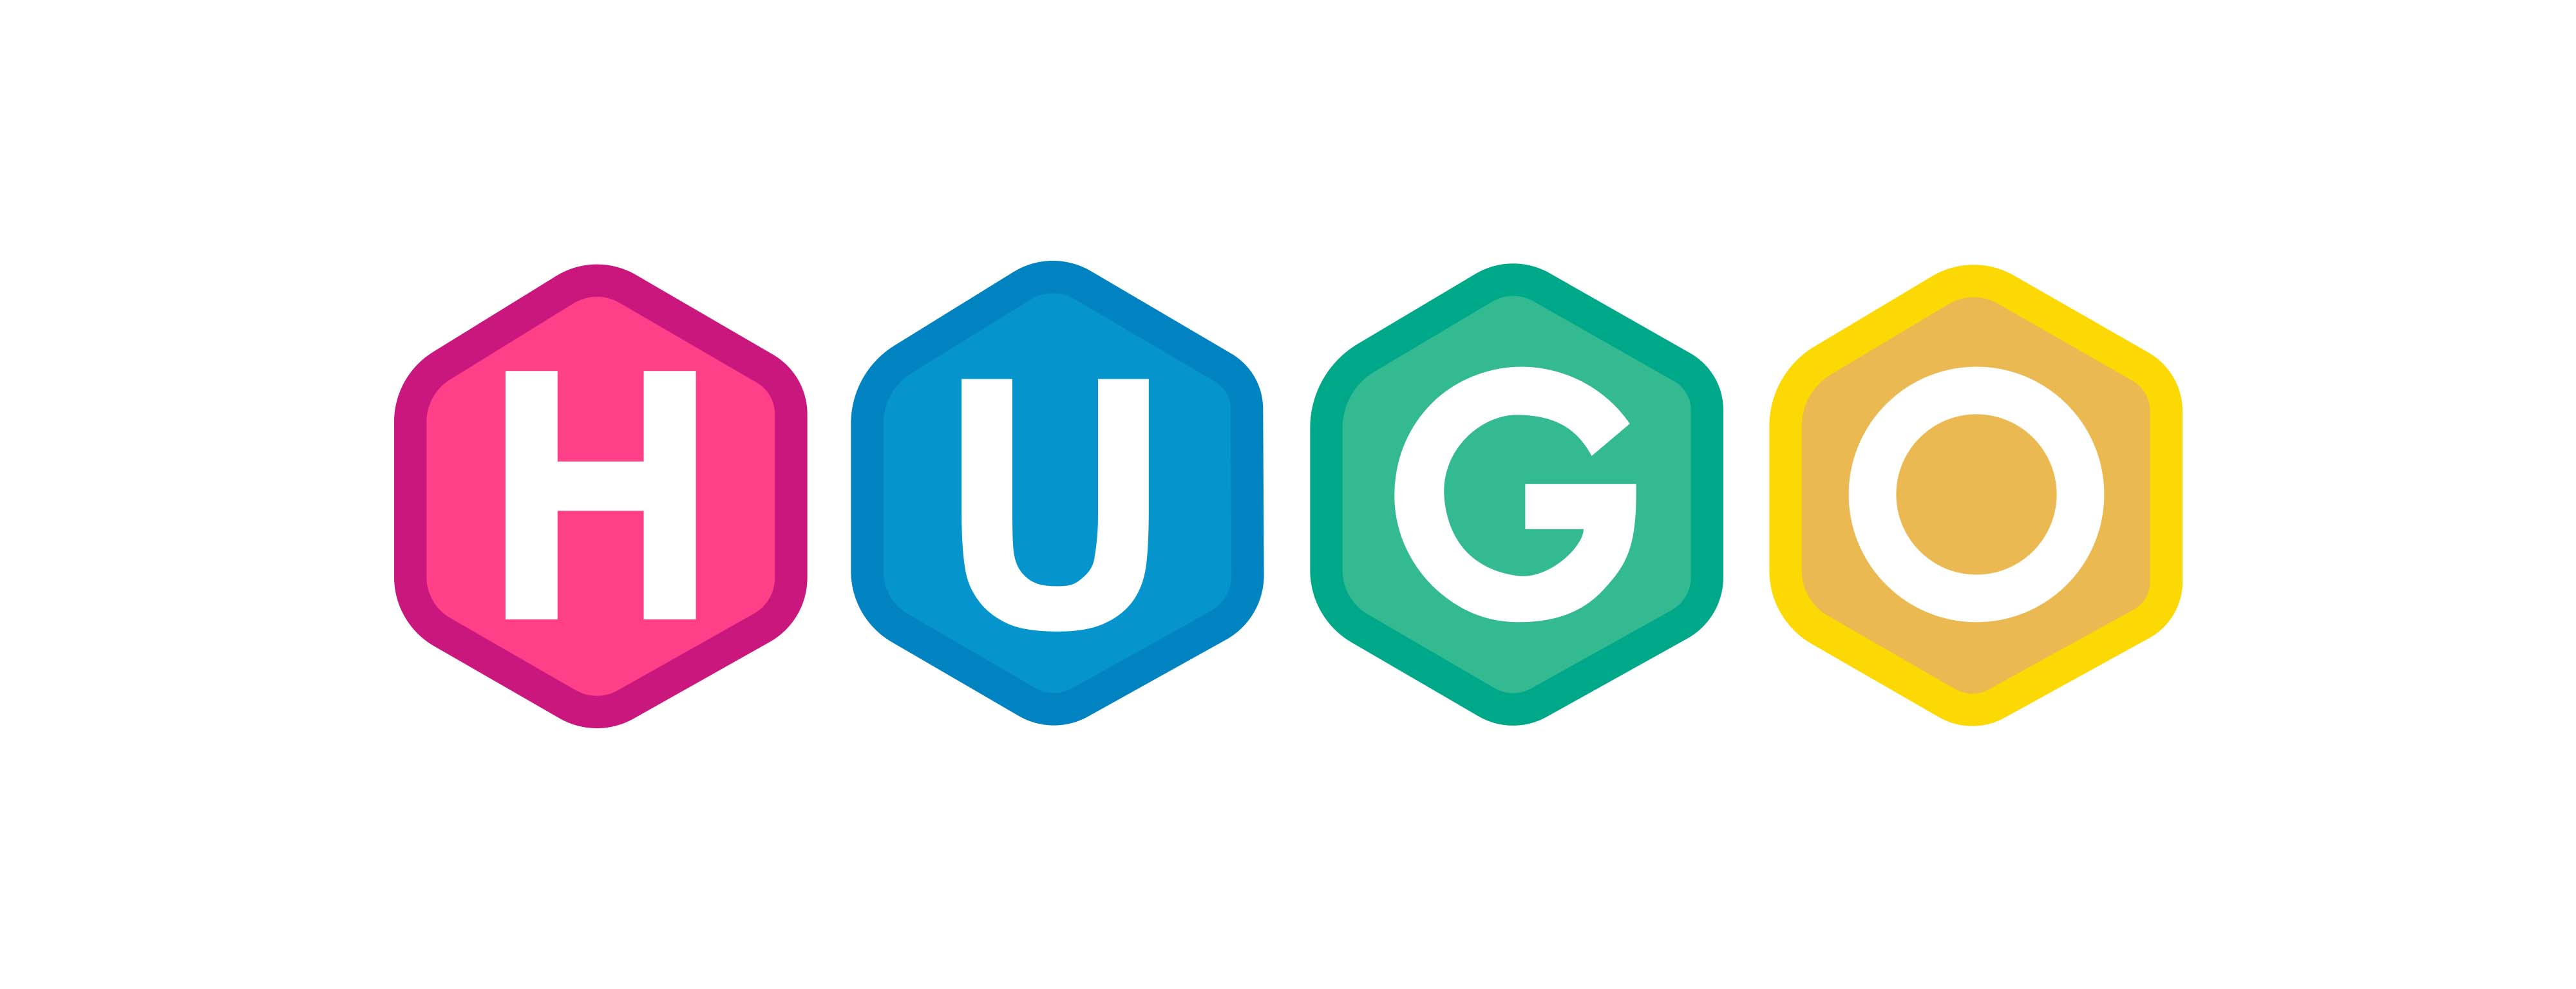 Hugo_logo_v2.jpg